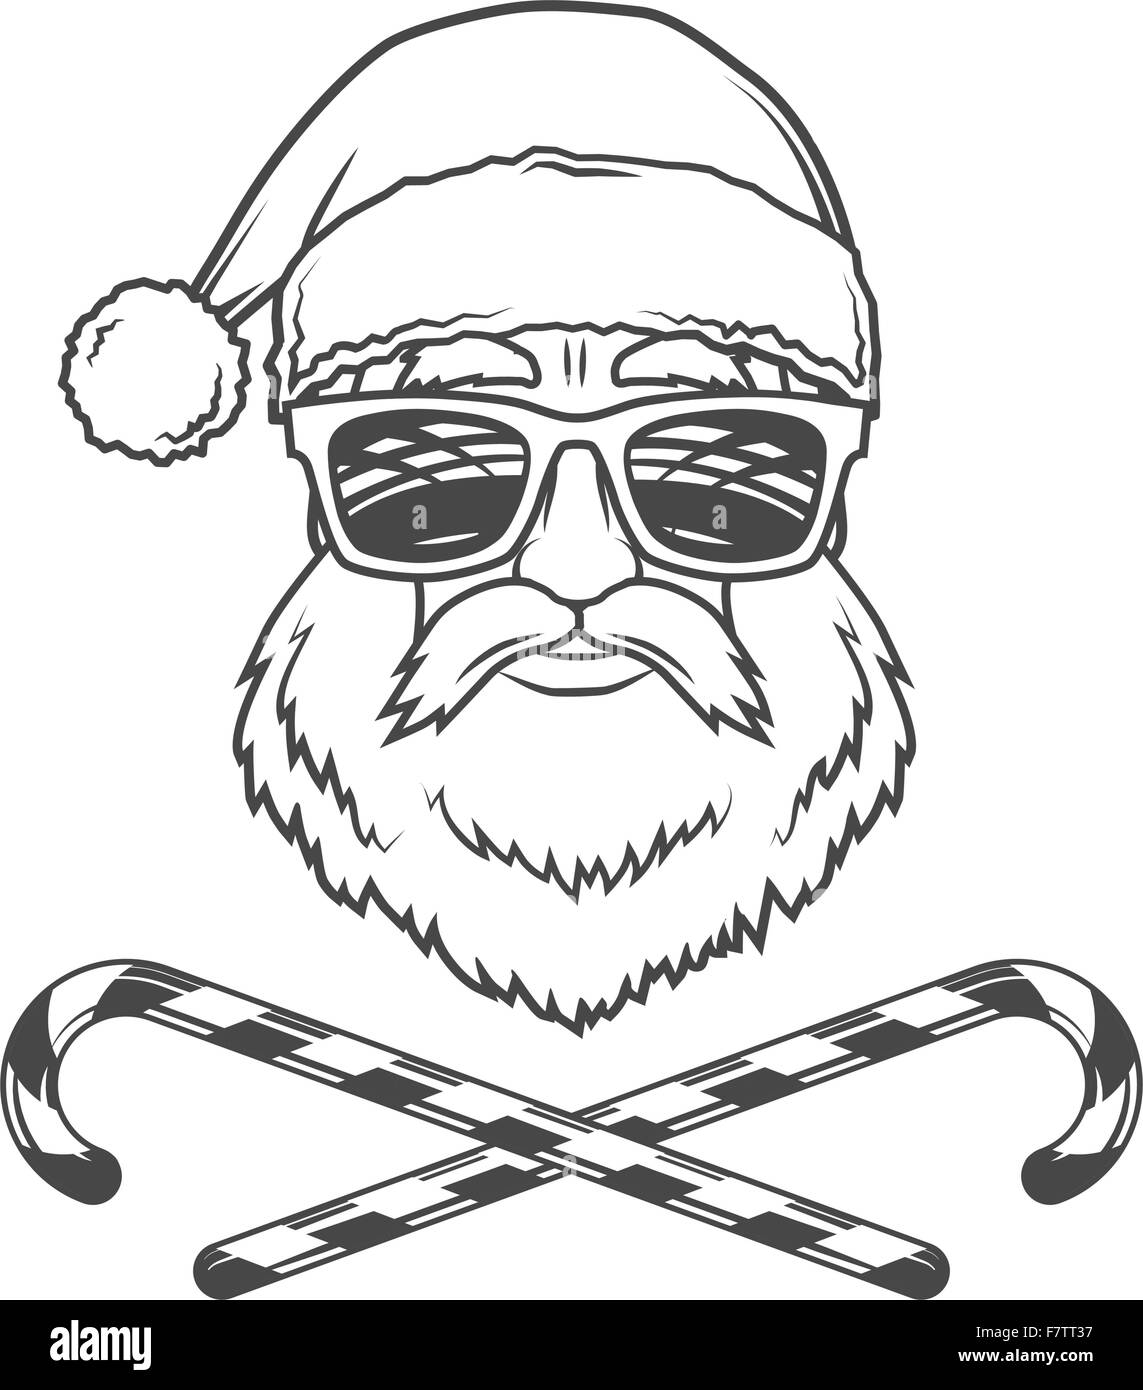 T-Shirt de Noël pour Homme et Femme Noir avec Père Nöel Hipster